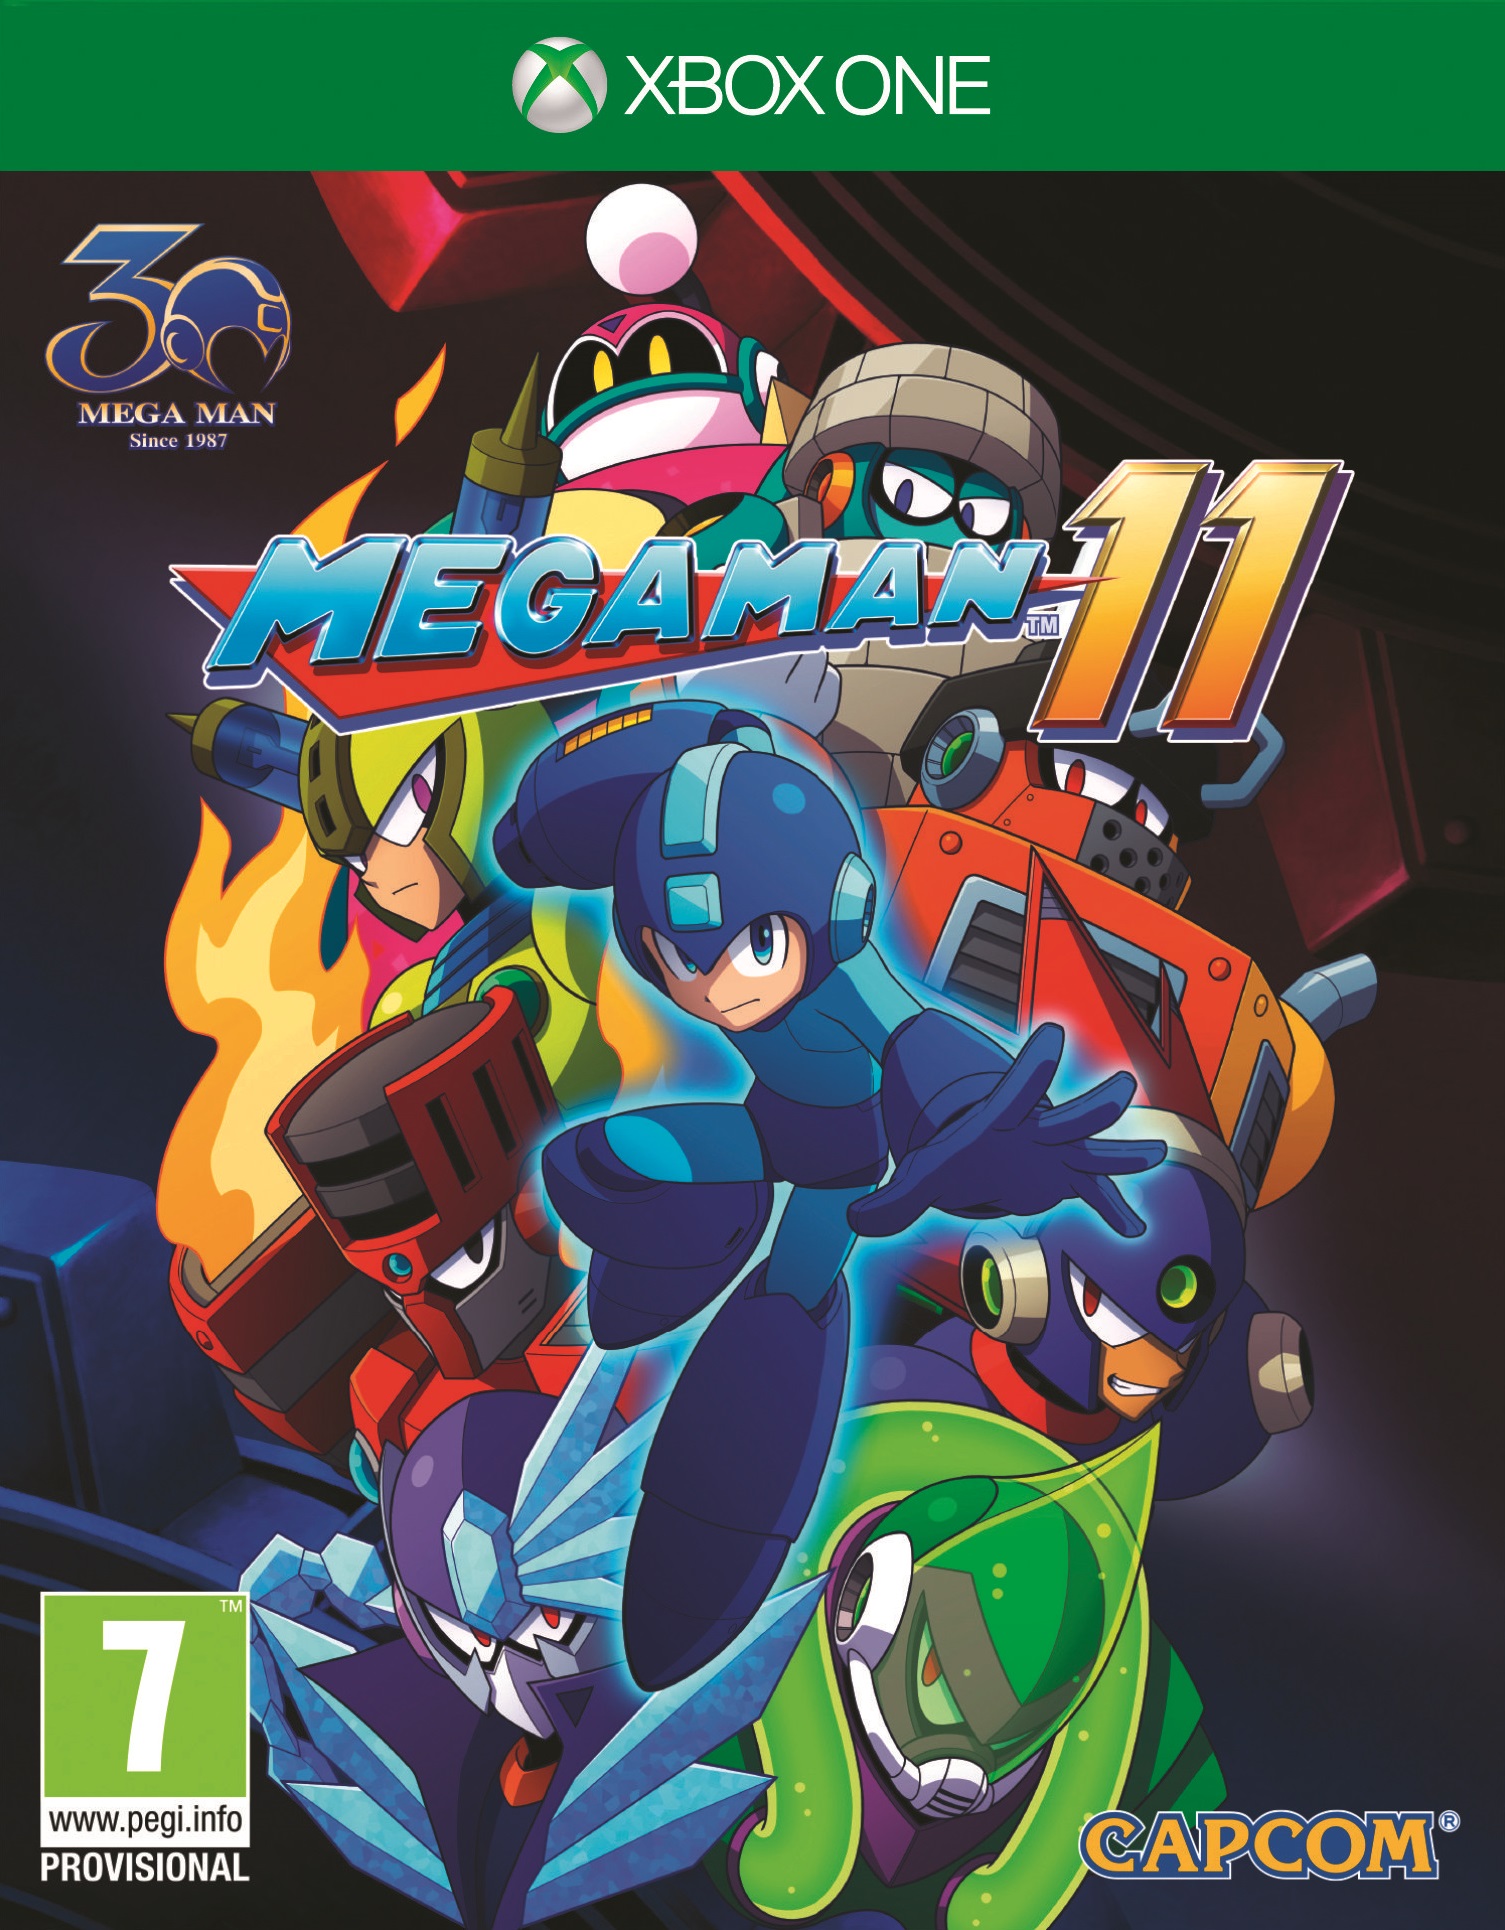 jaquette reduite de Mega Man 11 sur Xbox One